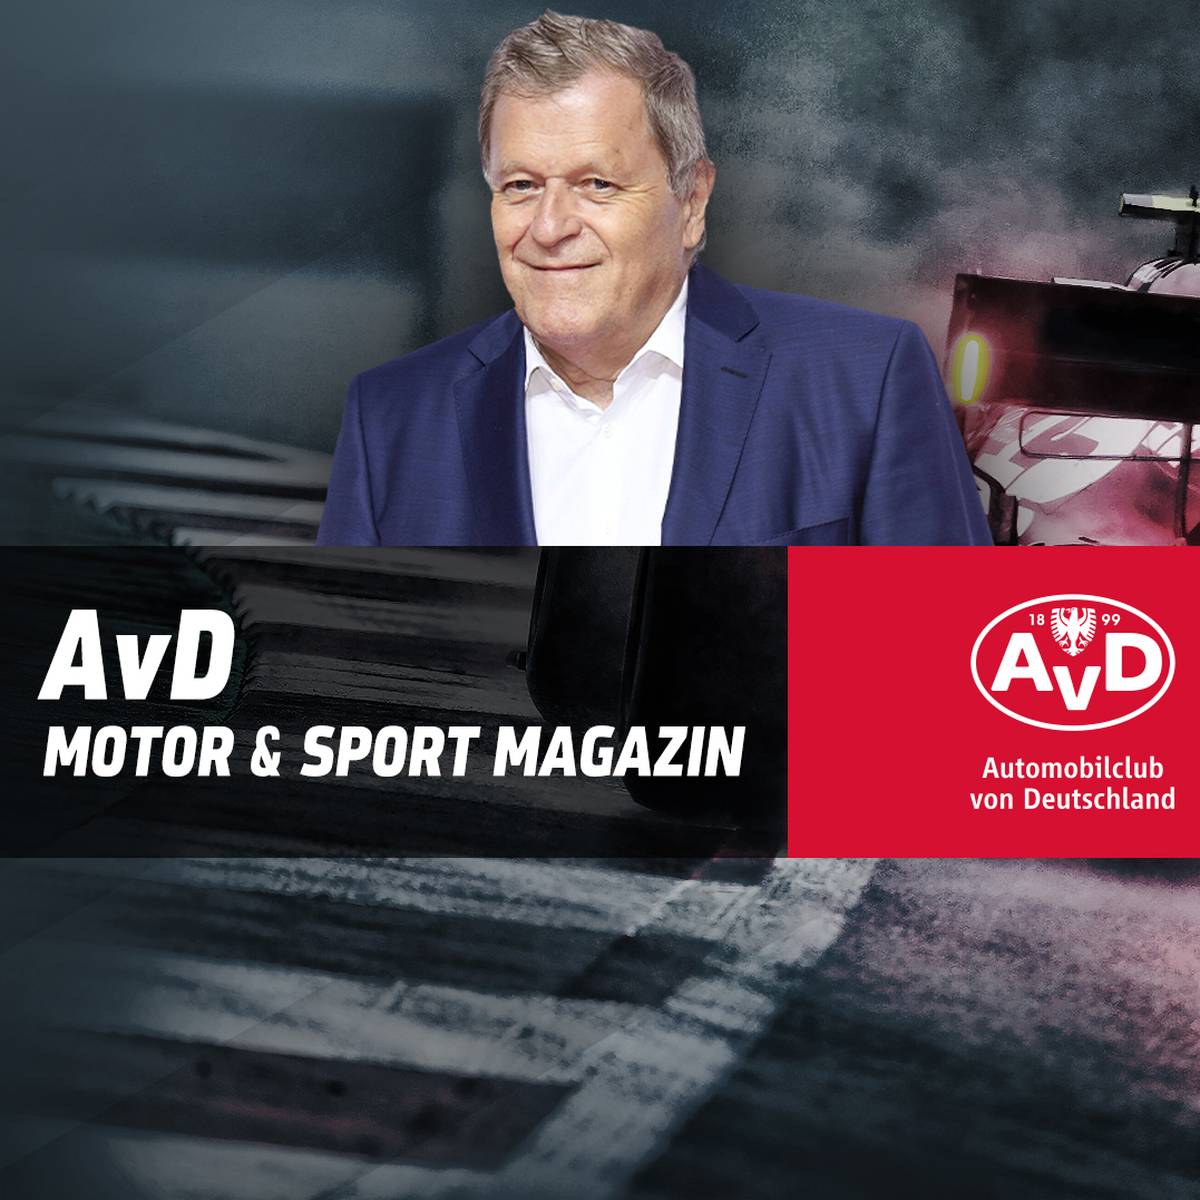 Das AvD Motor & Sport Magazin vom 02.10.2022 mit Norbert Haug